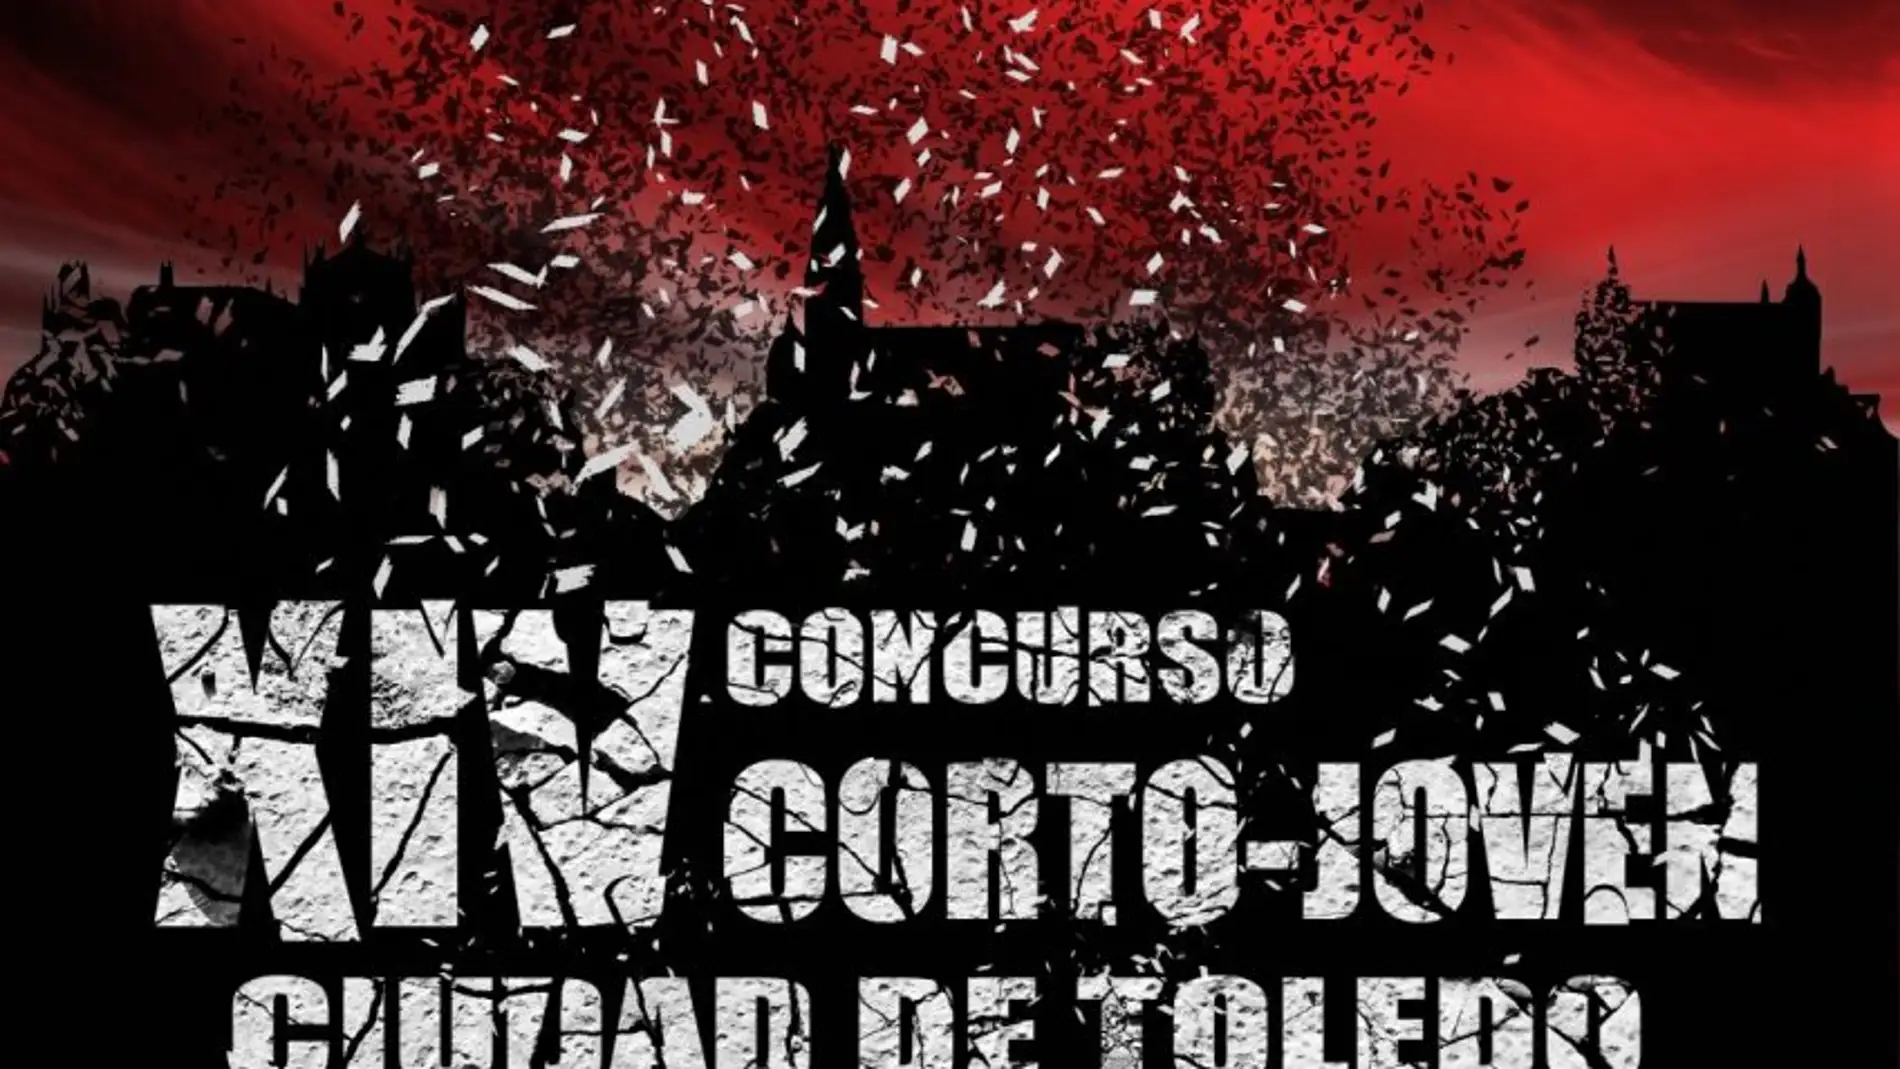 La capital acoge desde este miércoles el XIV Concurso Corto-Joven Ciudad de Toledo